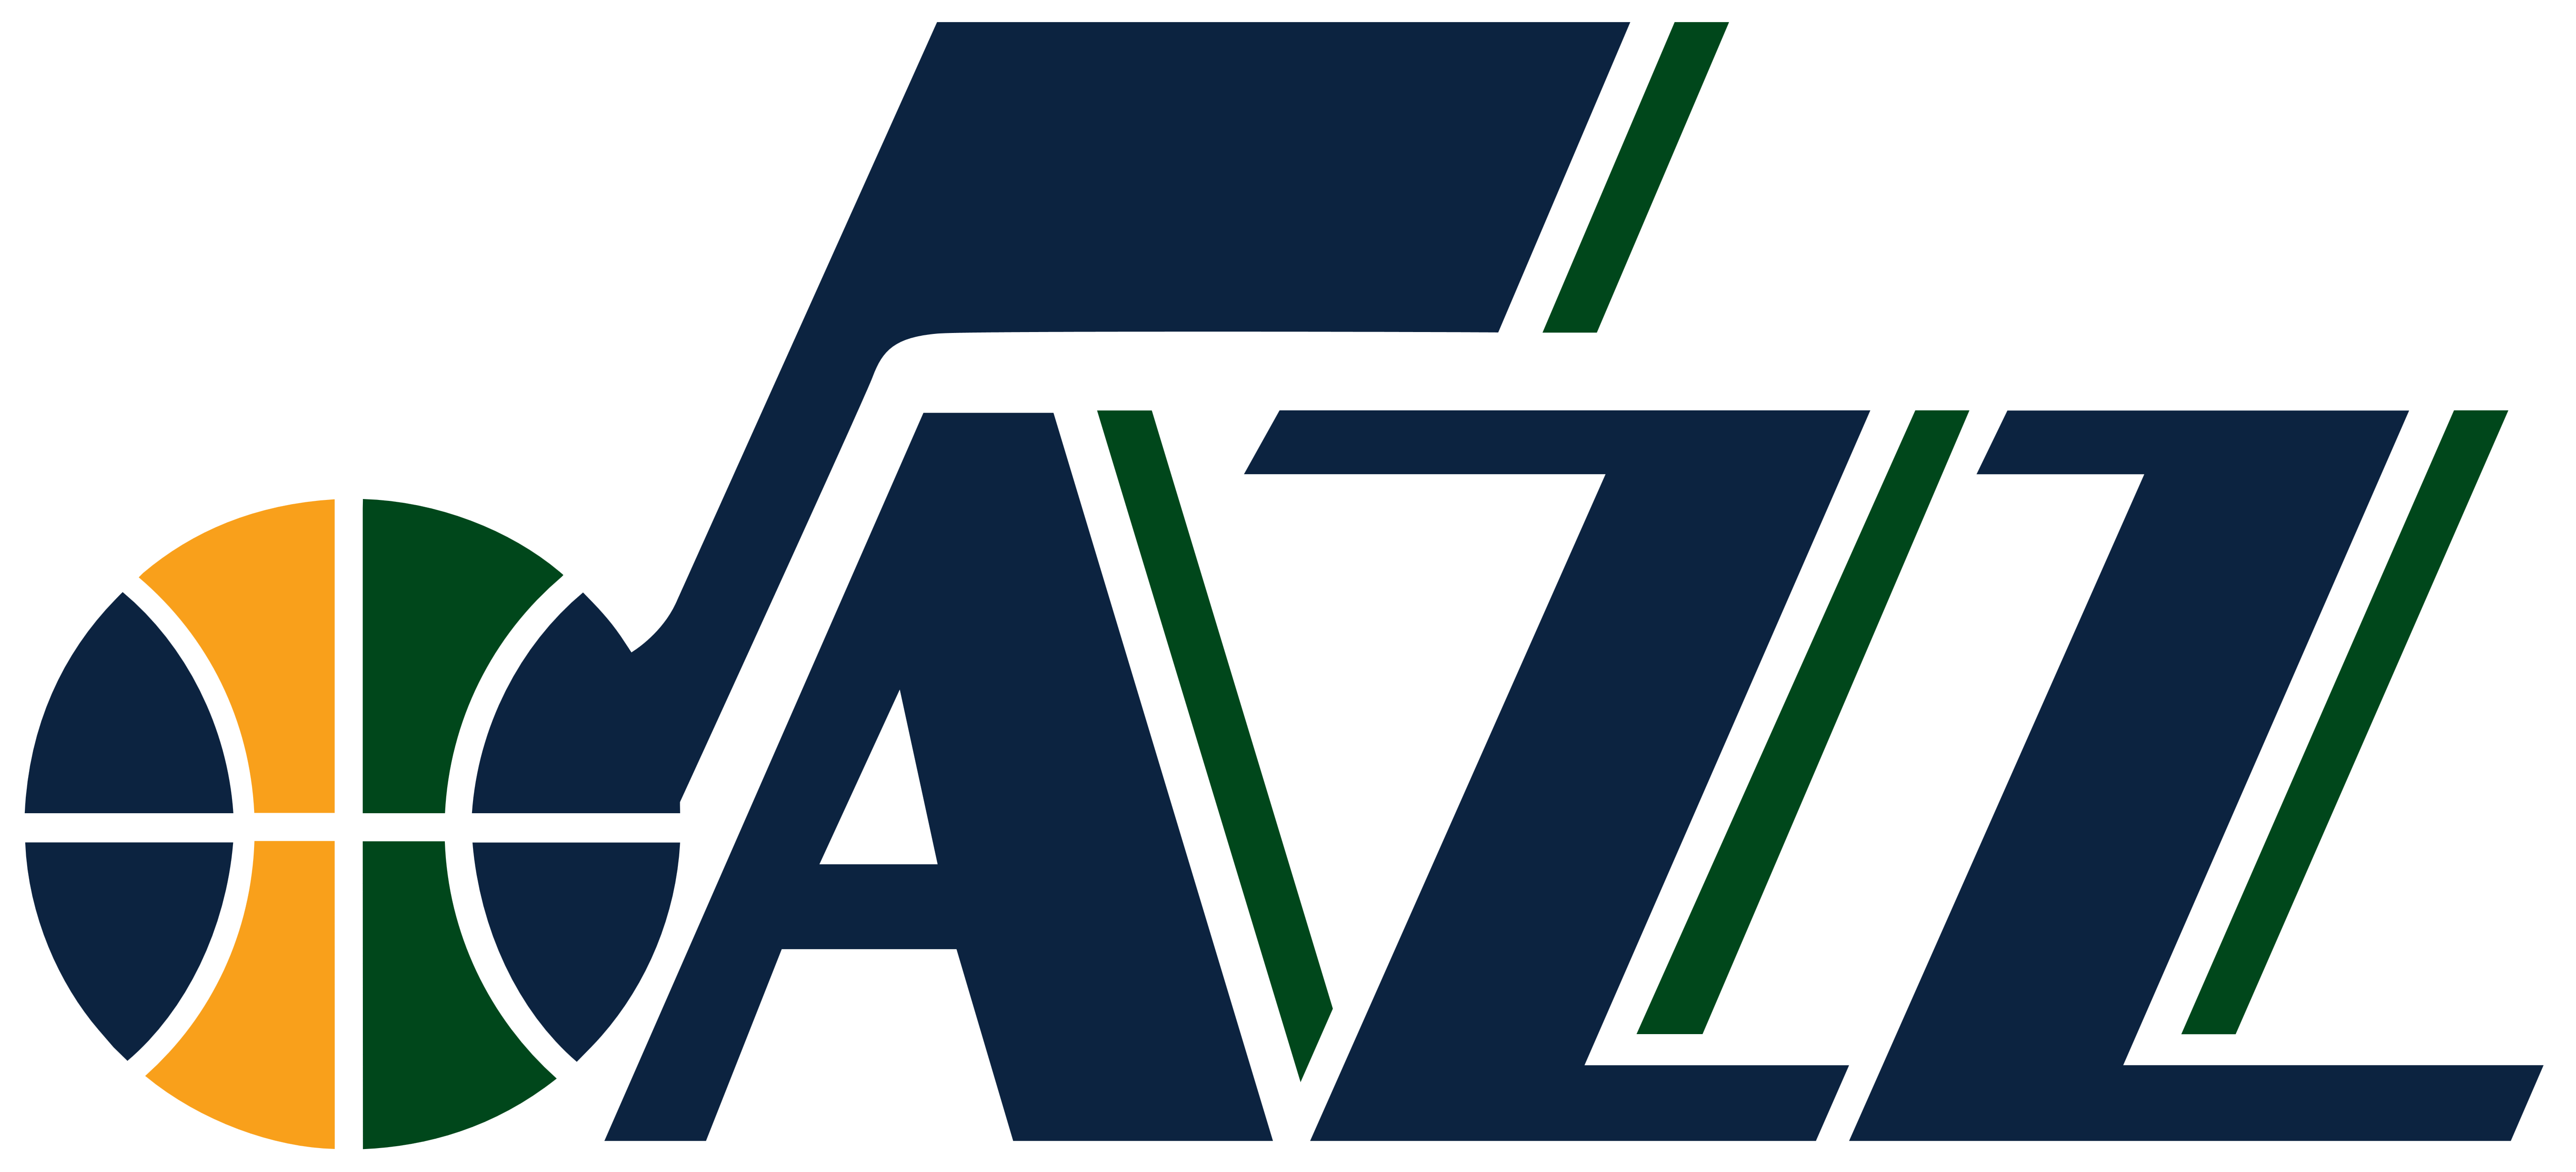 Utah Jazz &ndash Logos Download - Utah Jazz Wordmark Logo (5552x2528)